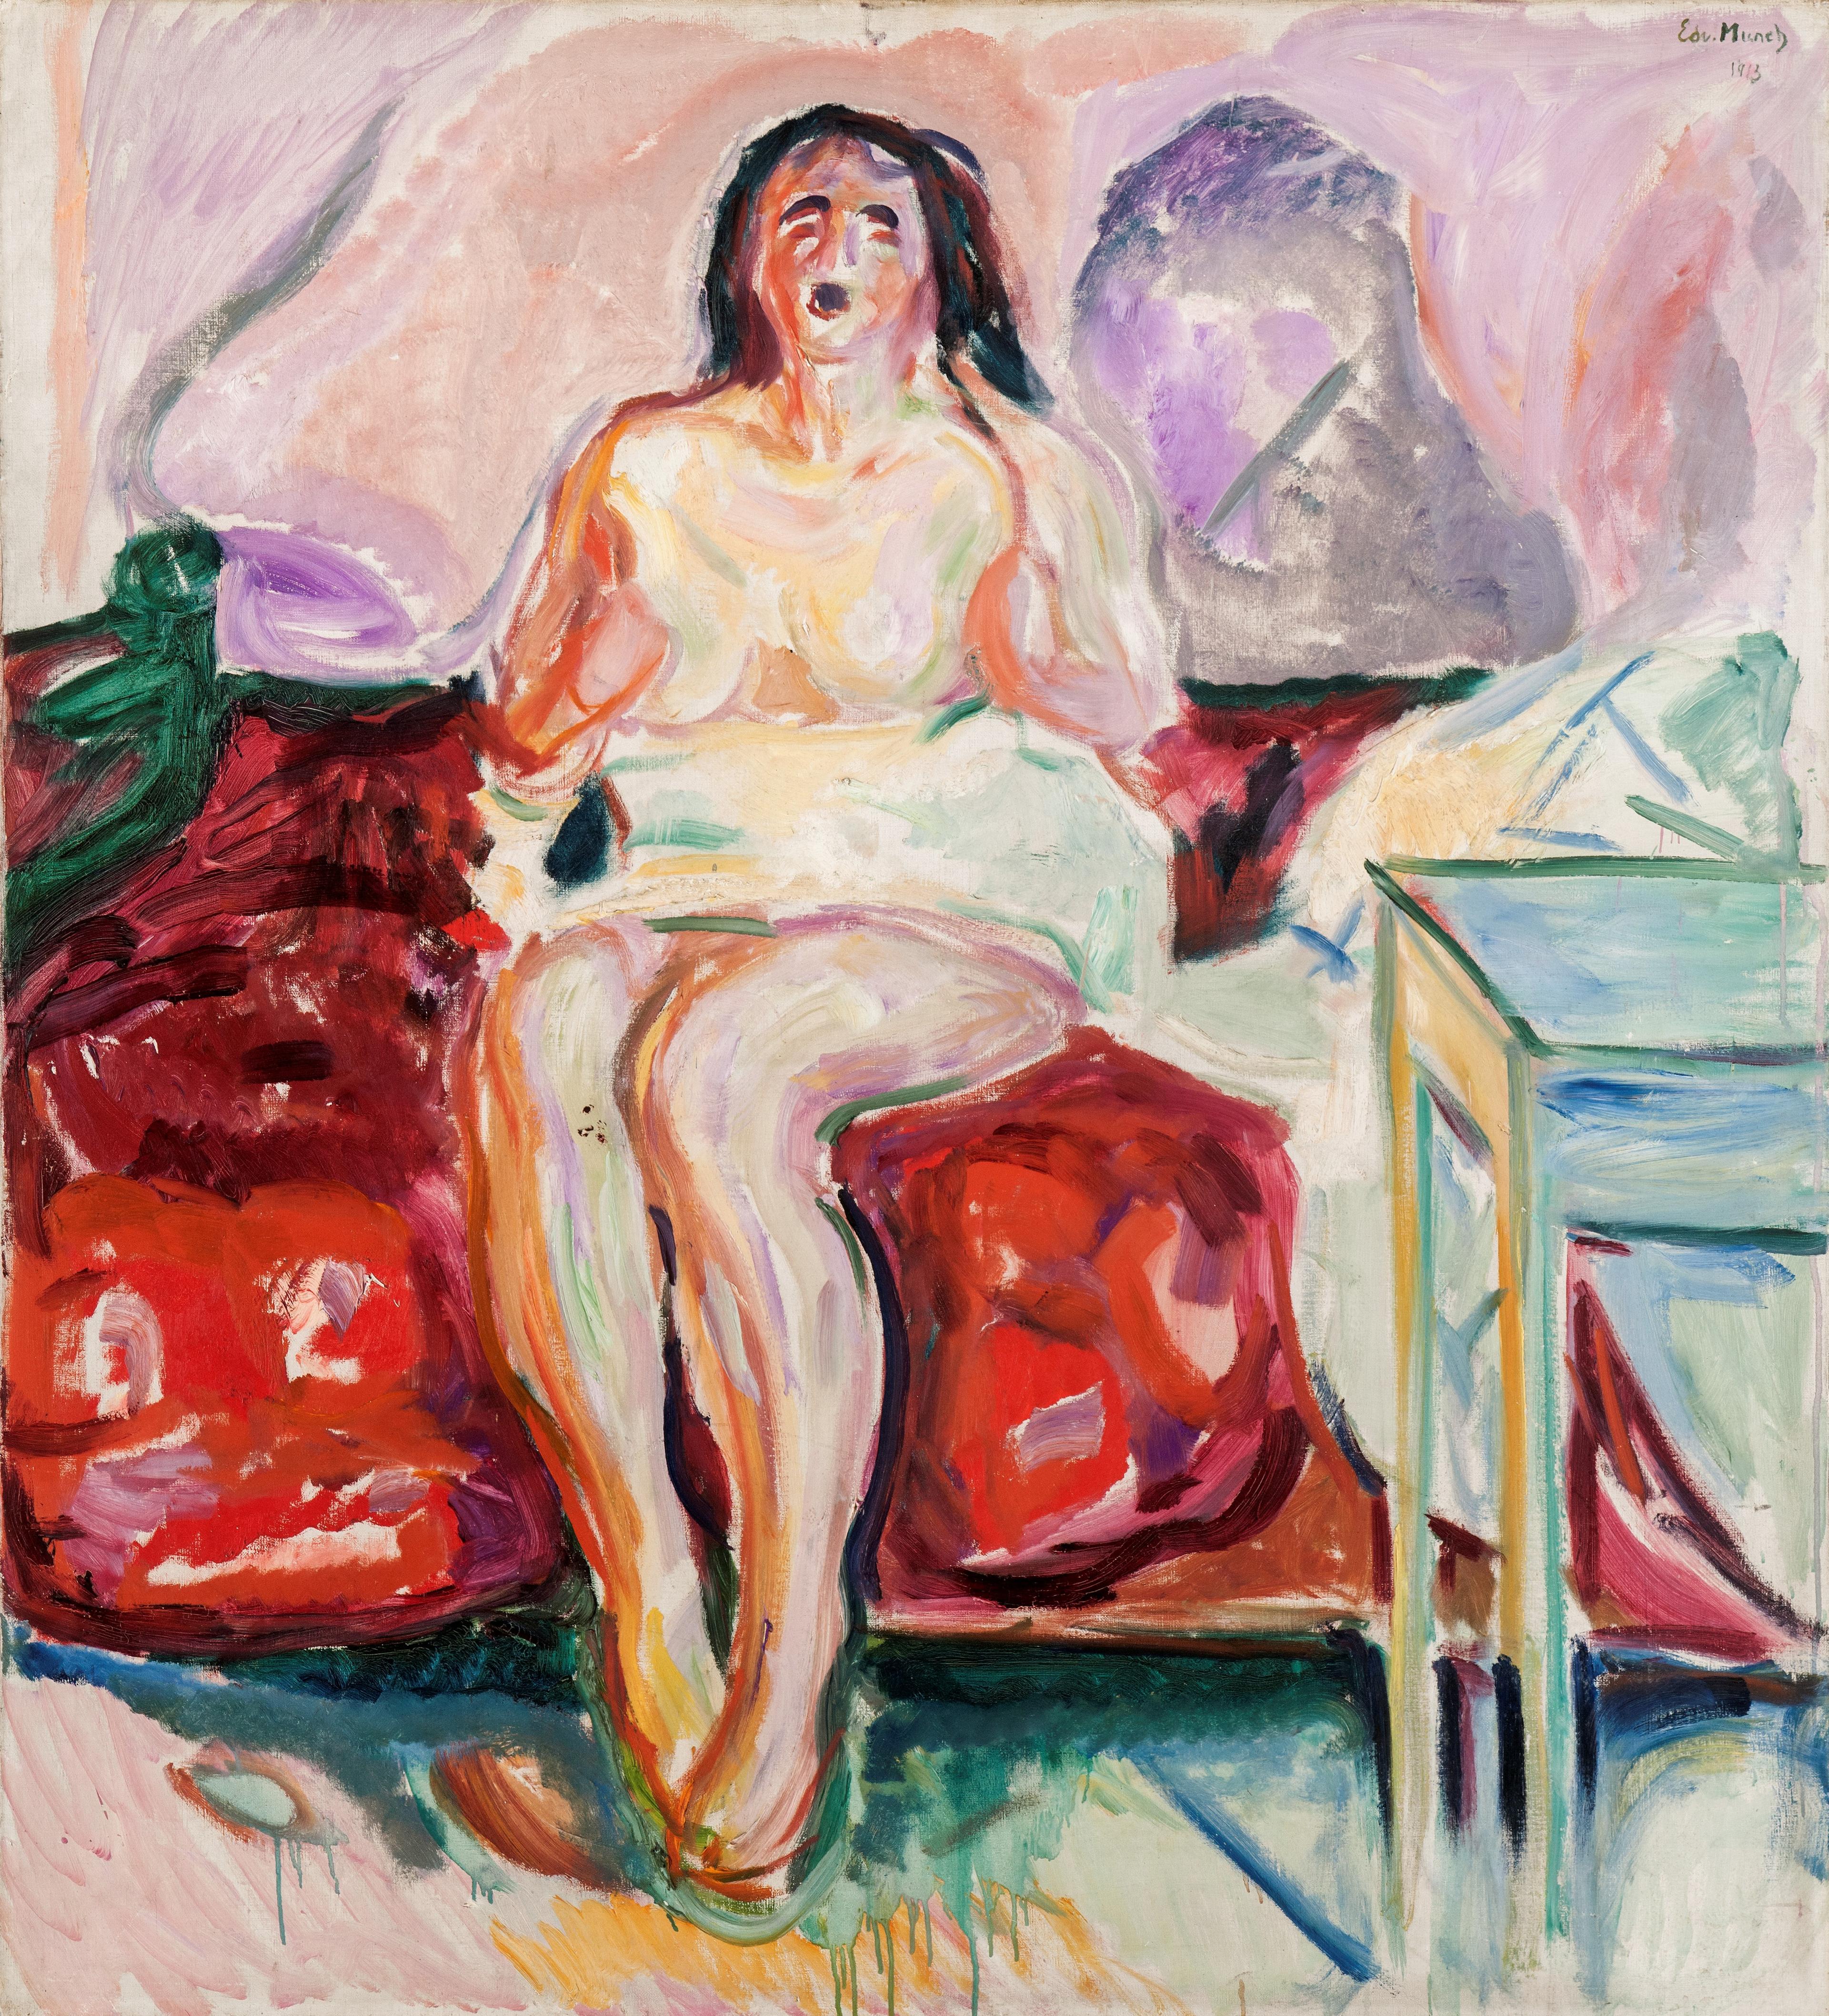 Et fargerikt motiv av Edvard Munch, som framstiller en kvinne som sitter på en seng og gjesper